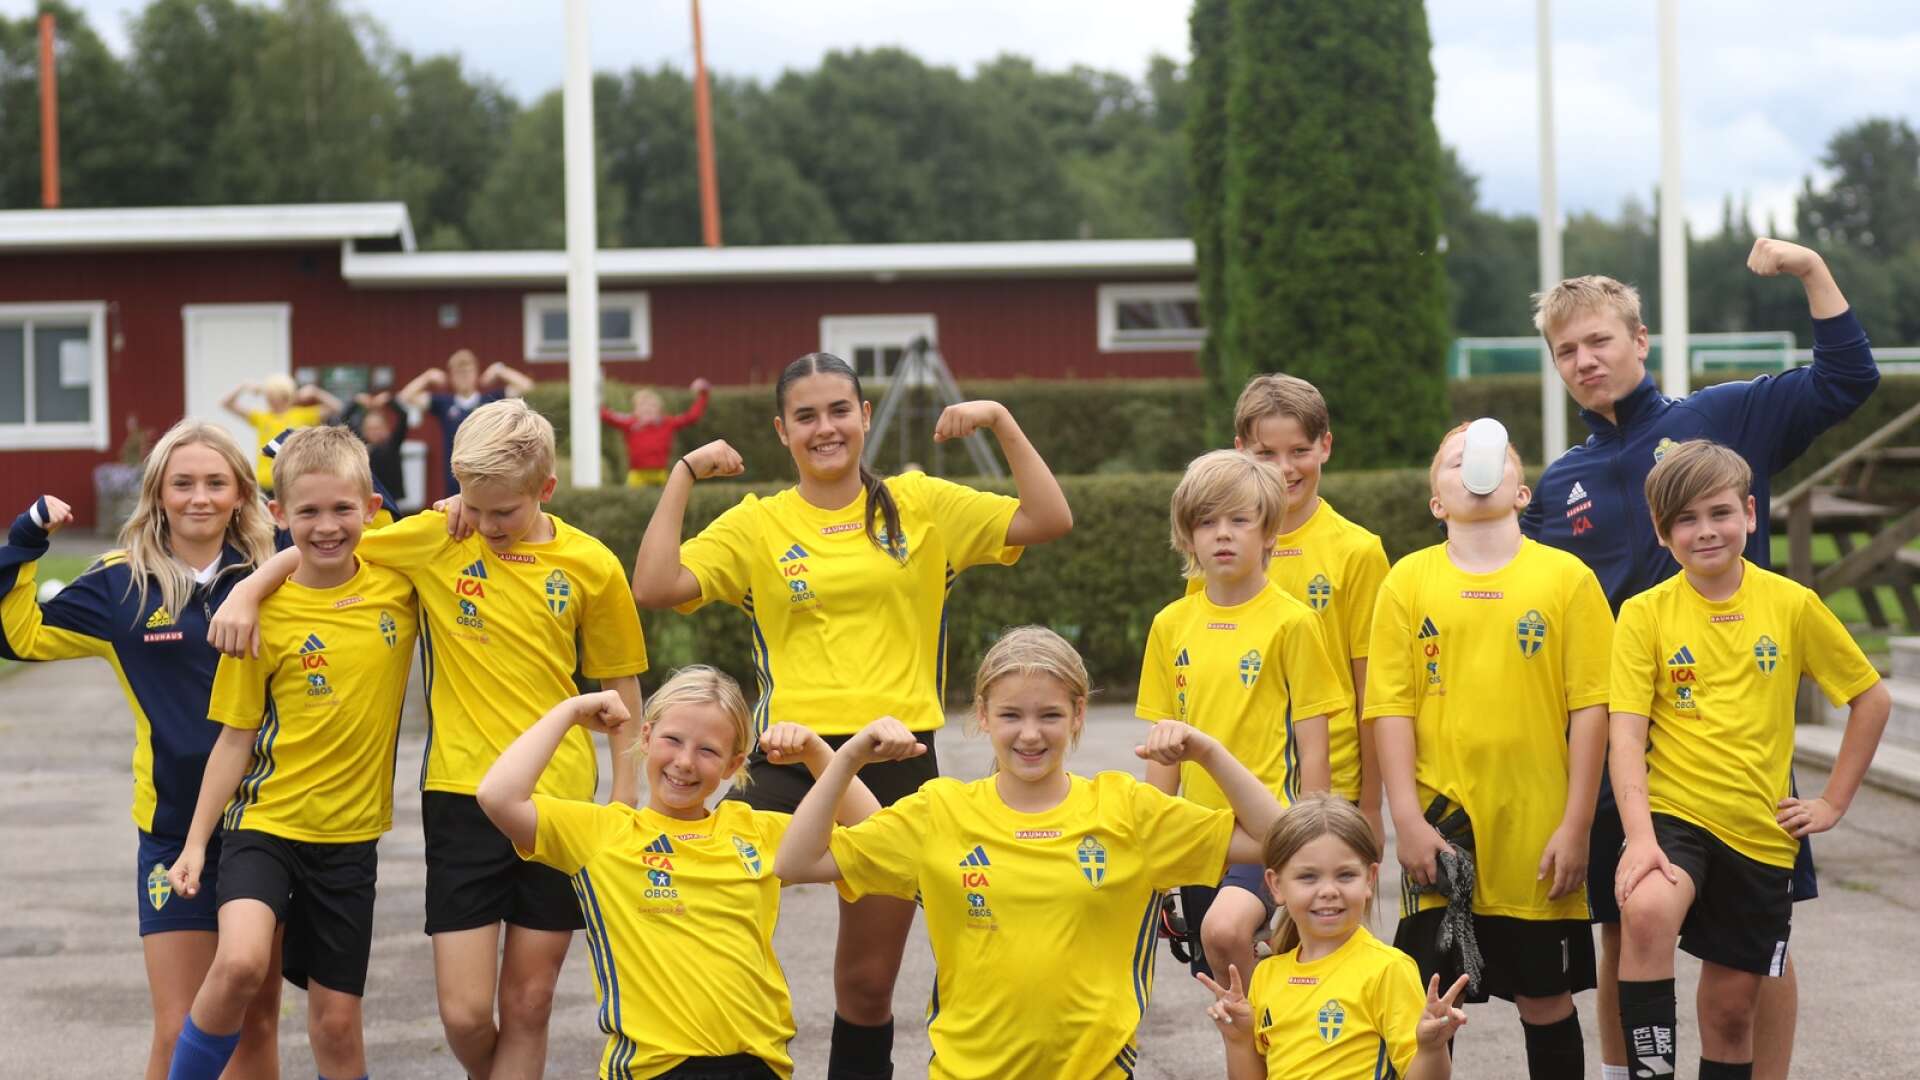 Taggade spelare på Ulvåkers fotbollsskola